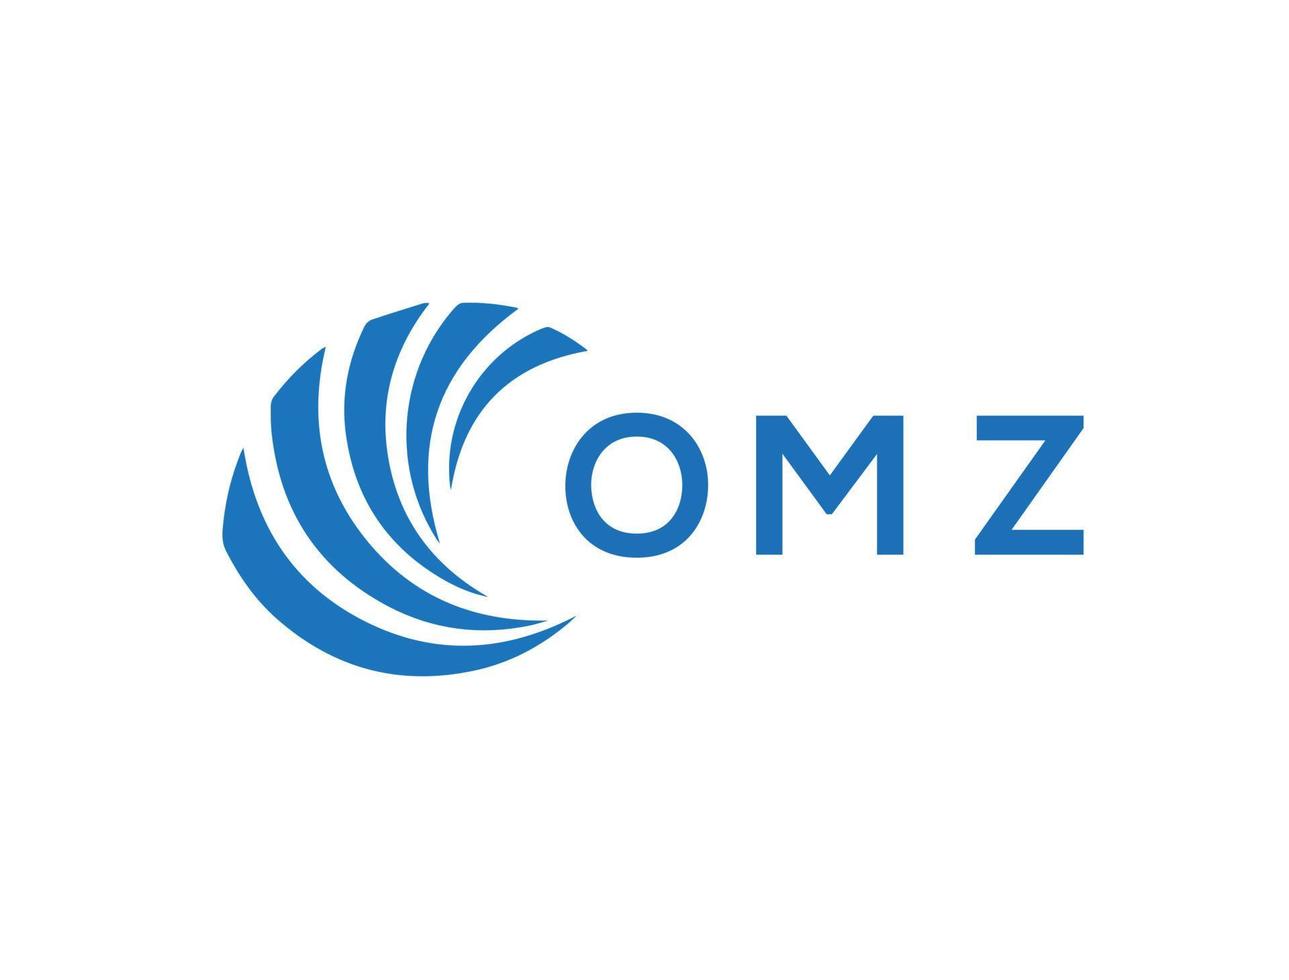 OMZ letter logo design on white background. OMZ creative circle letter logo concept. OMZ letter design. vector